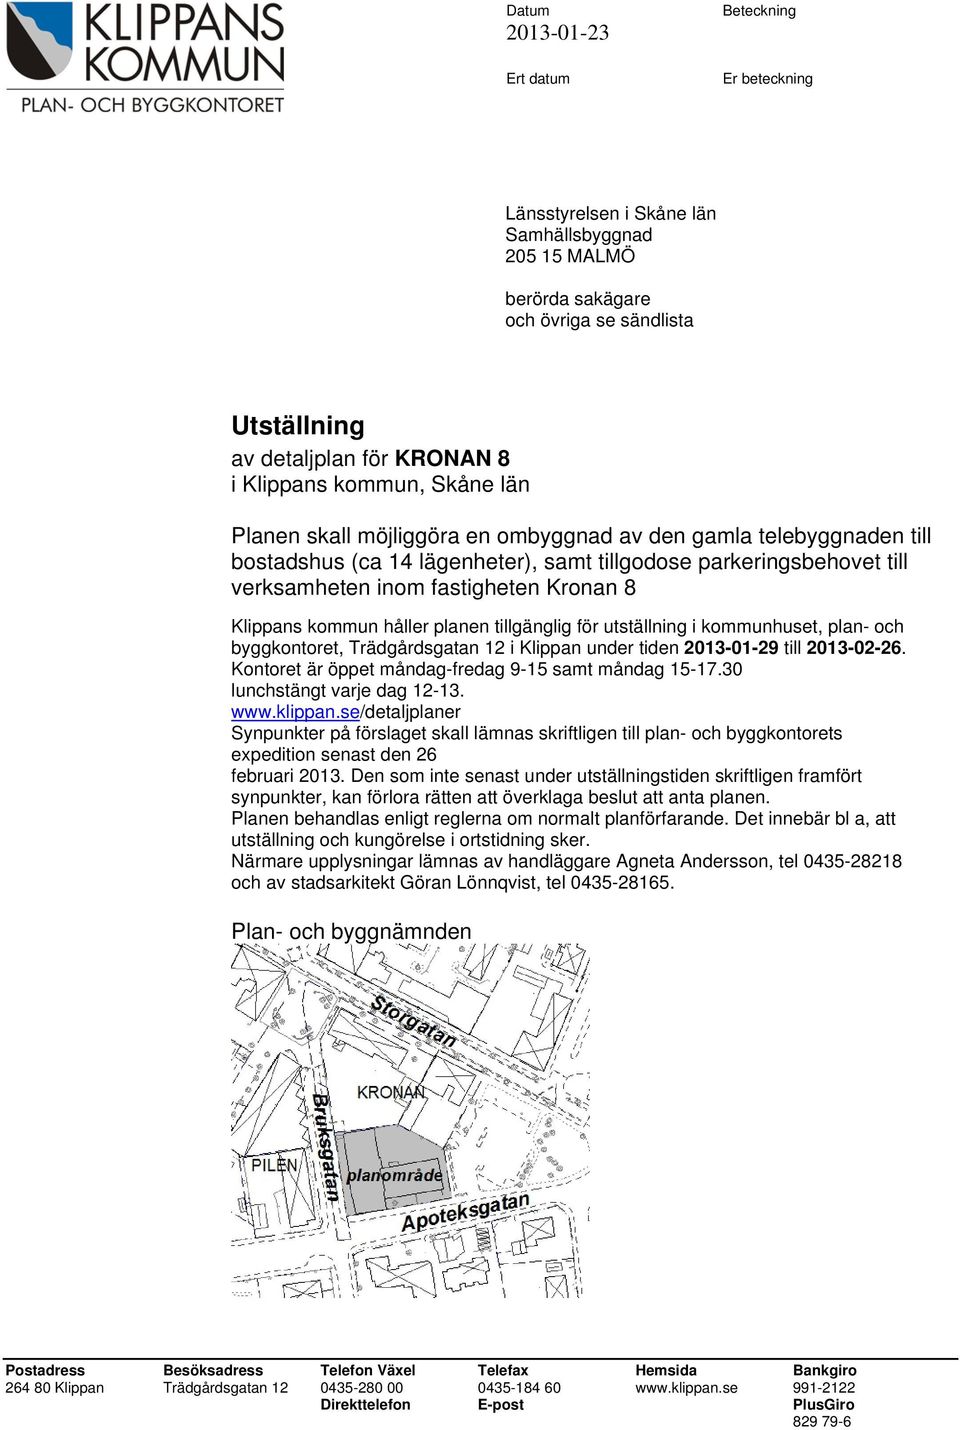 Klippans kommun håller planen tillgänglig för utställning i kommunhuset, plan- och byggkontoret, Trädgårdsgatan 12 i Klippan under tiden 2013-01-29 till 2013-02-26.